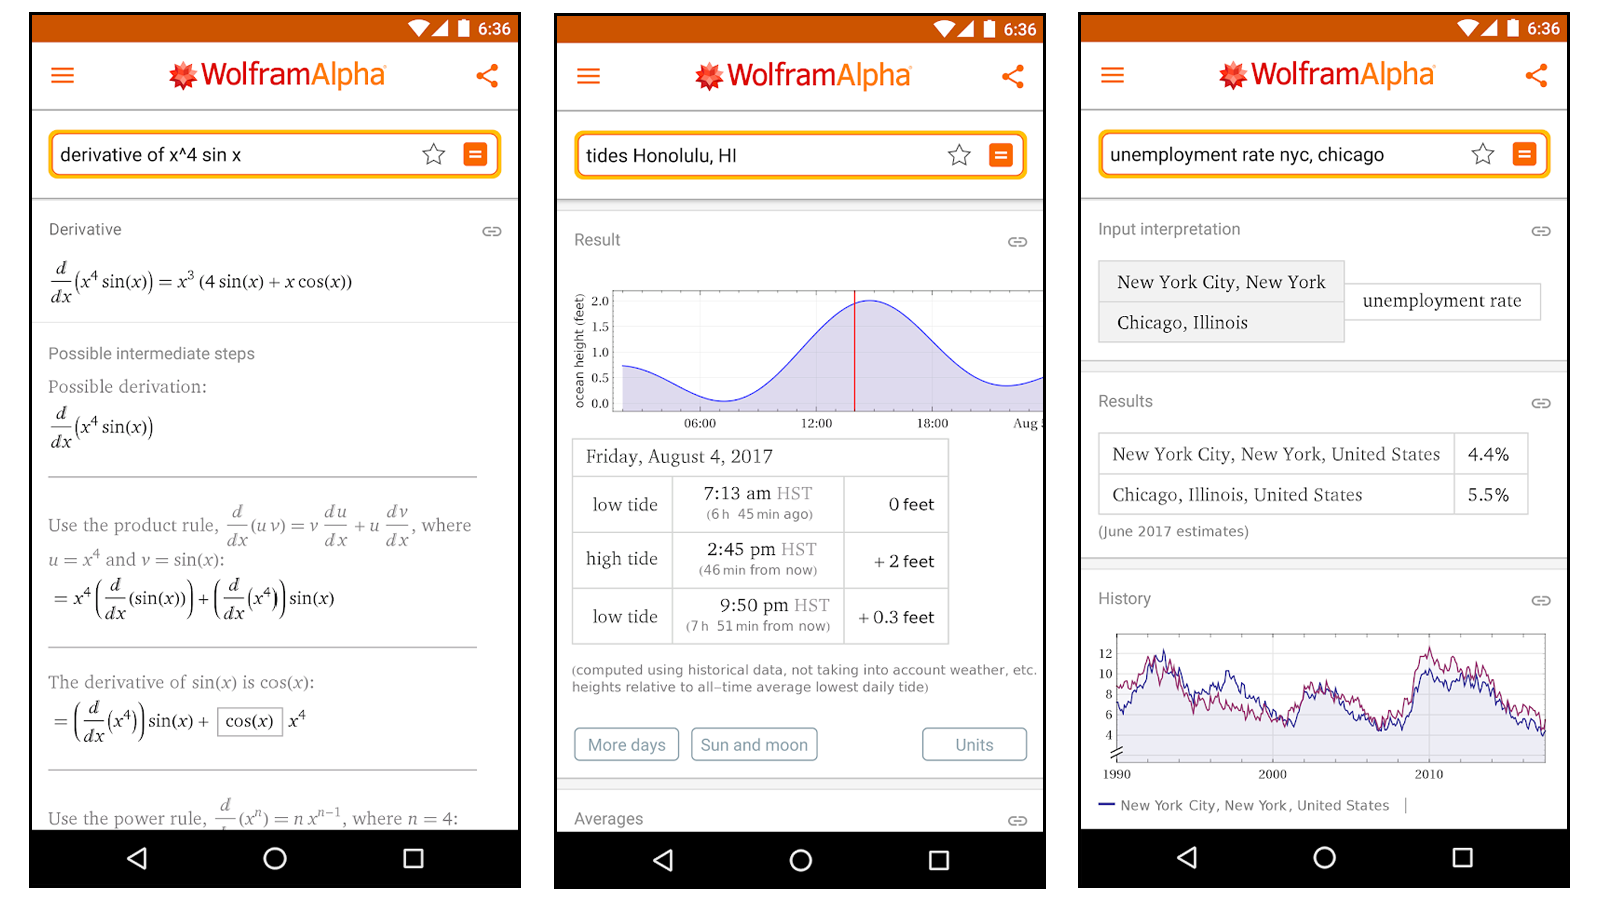 Tìm hiểu cách giải các bài toán và nghiên cứu các chủ đề khác với ứng dụng của Wolfram Alpha